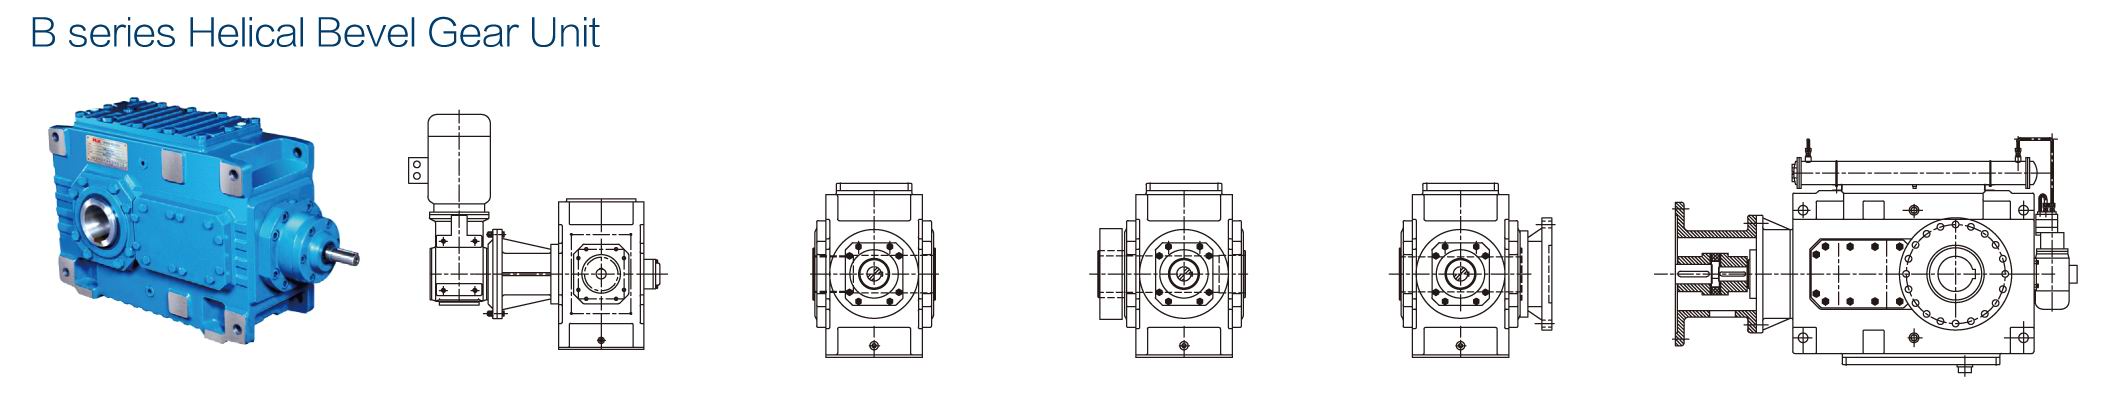 Diseño modular de unidad de engranaje cónico helicoidal de ángulo recto